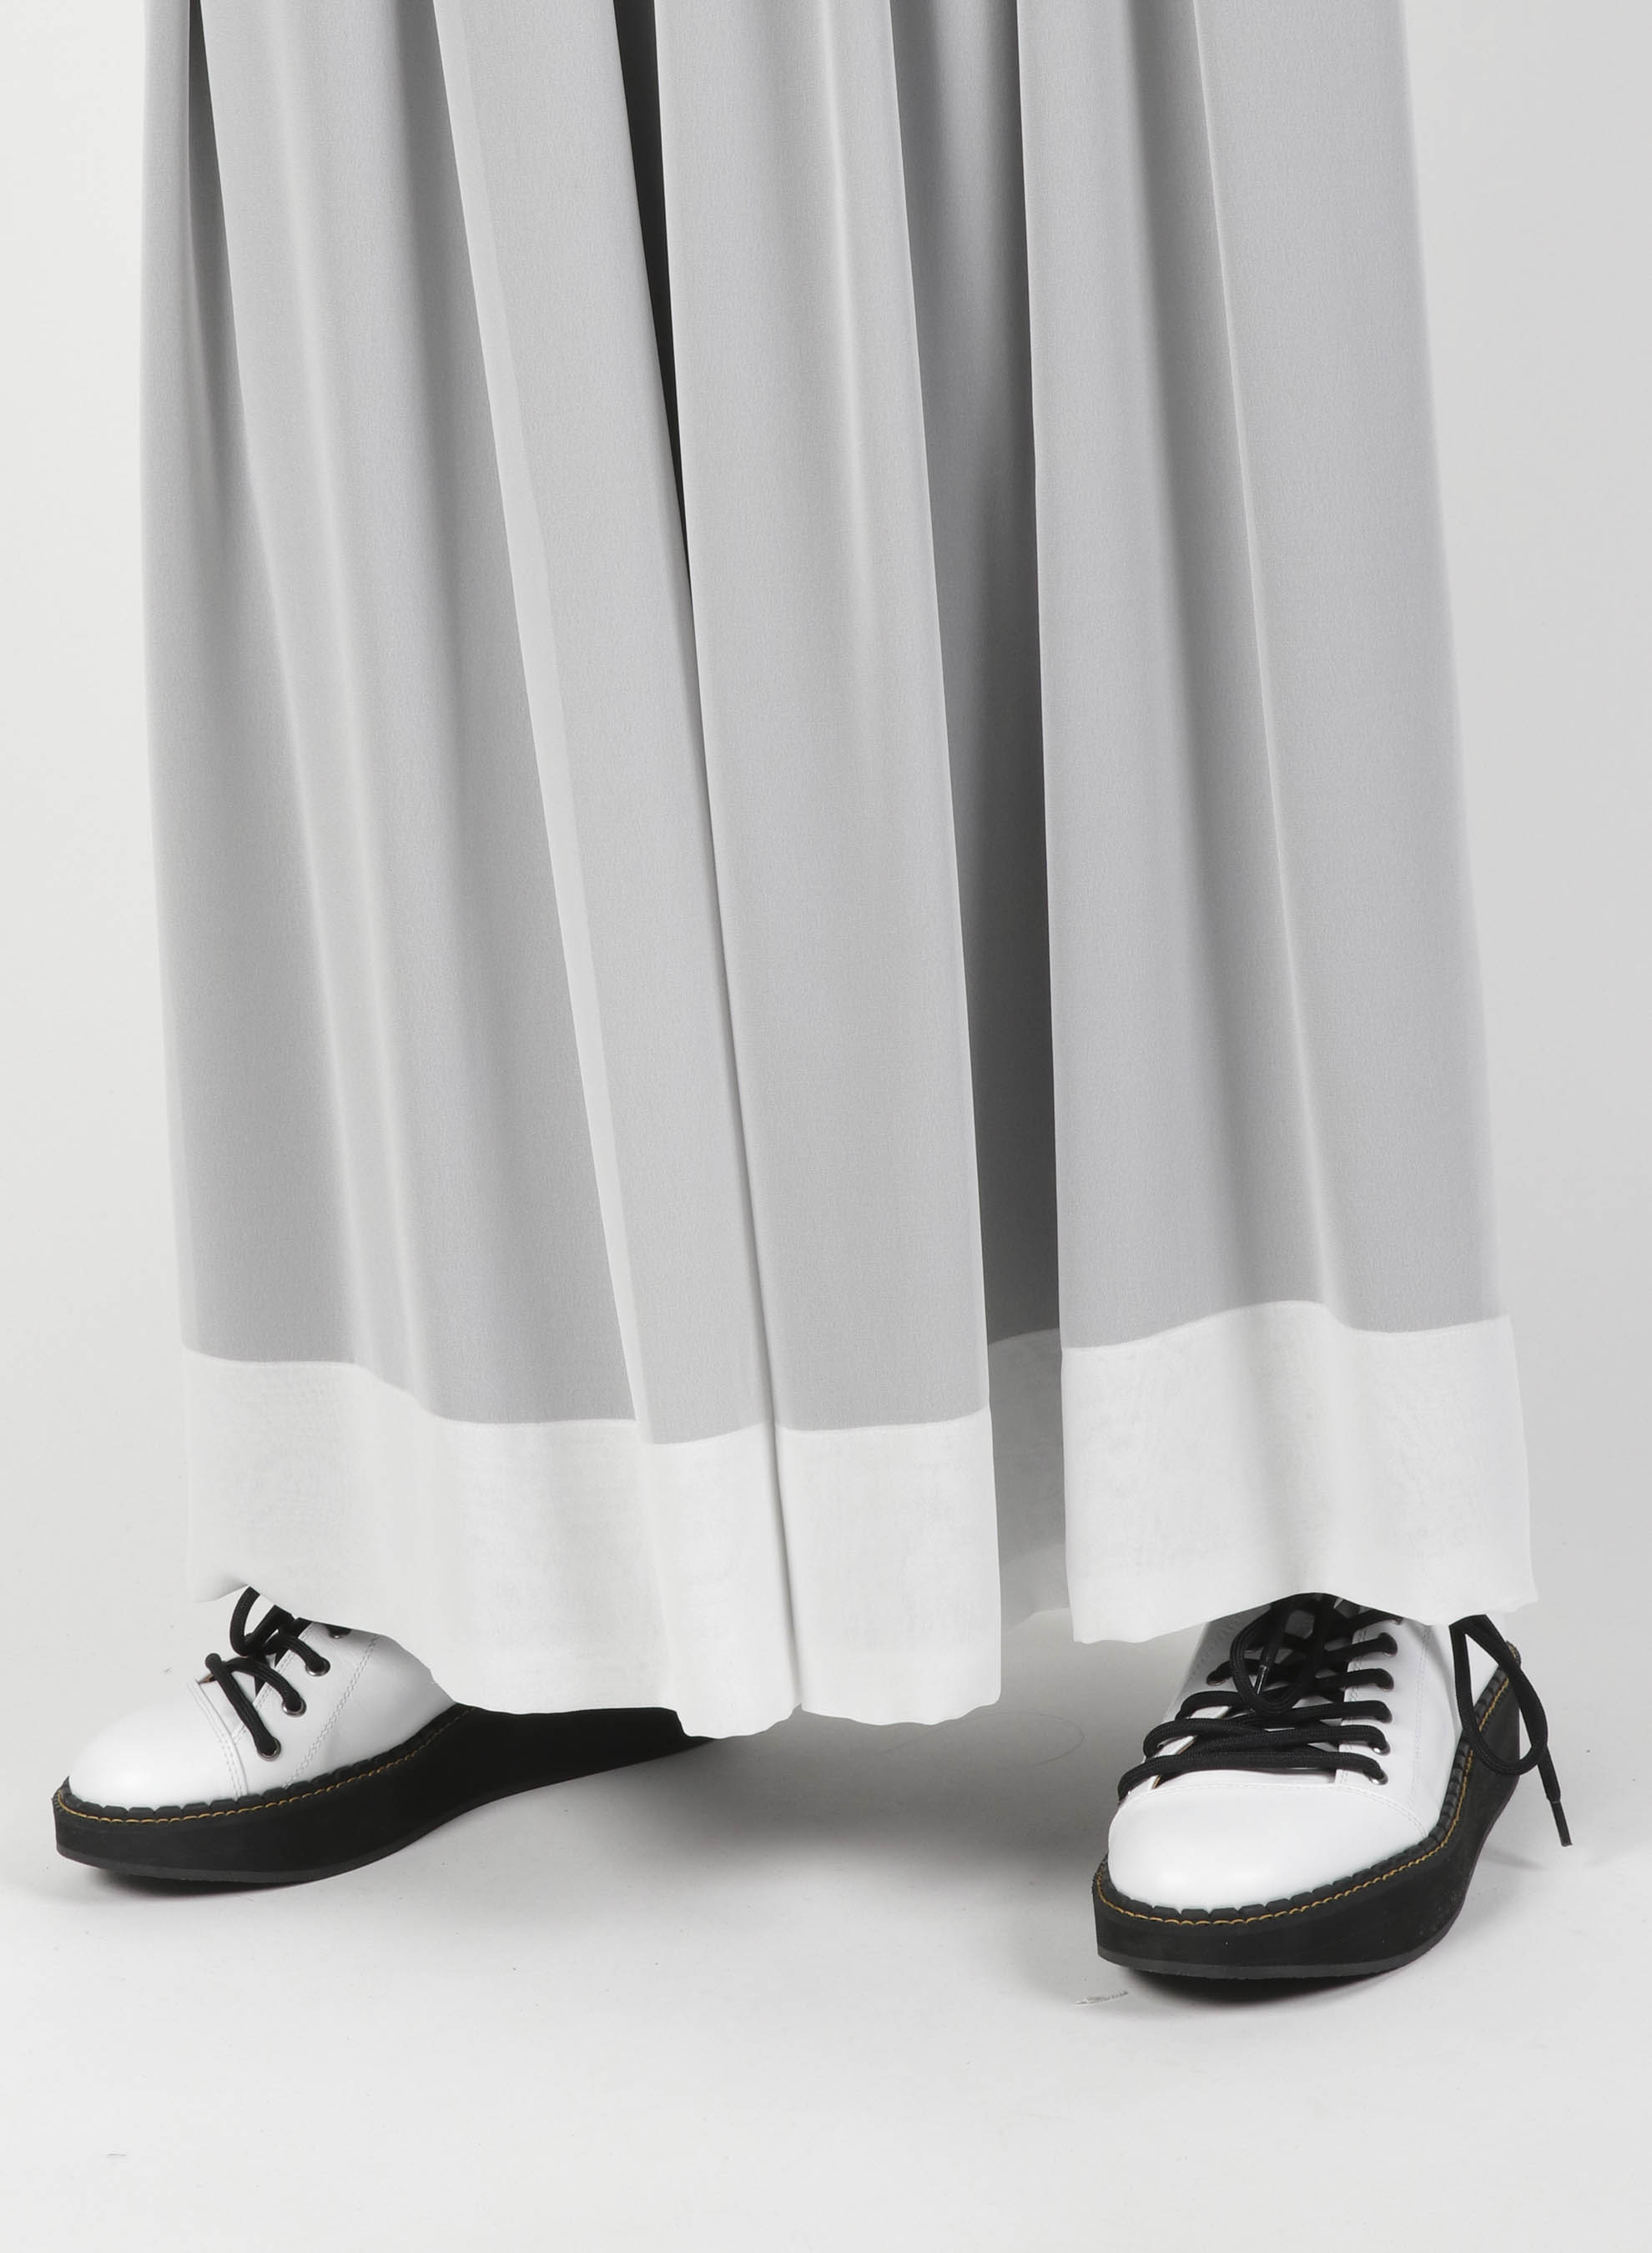 Chiffon Satin Combination Layered Gather Skirt